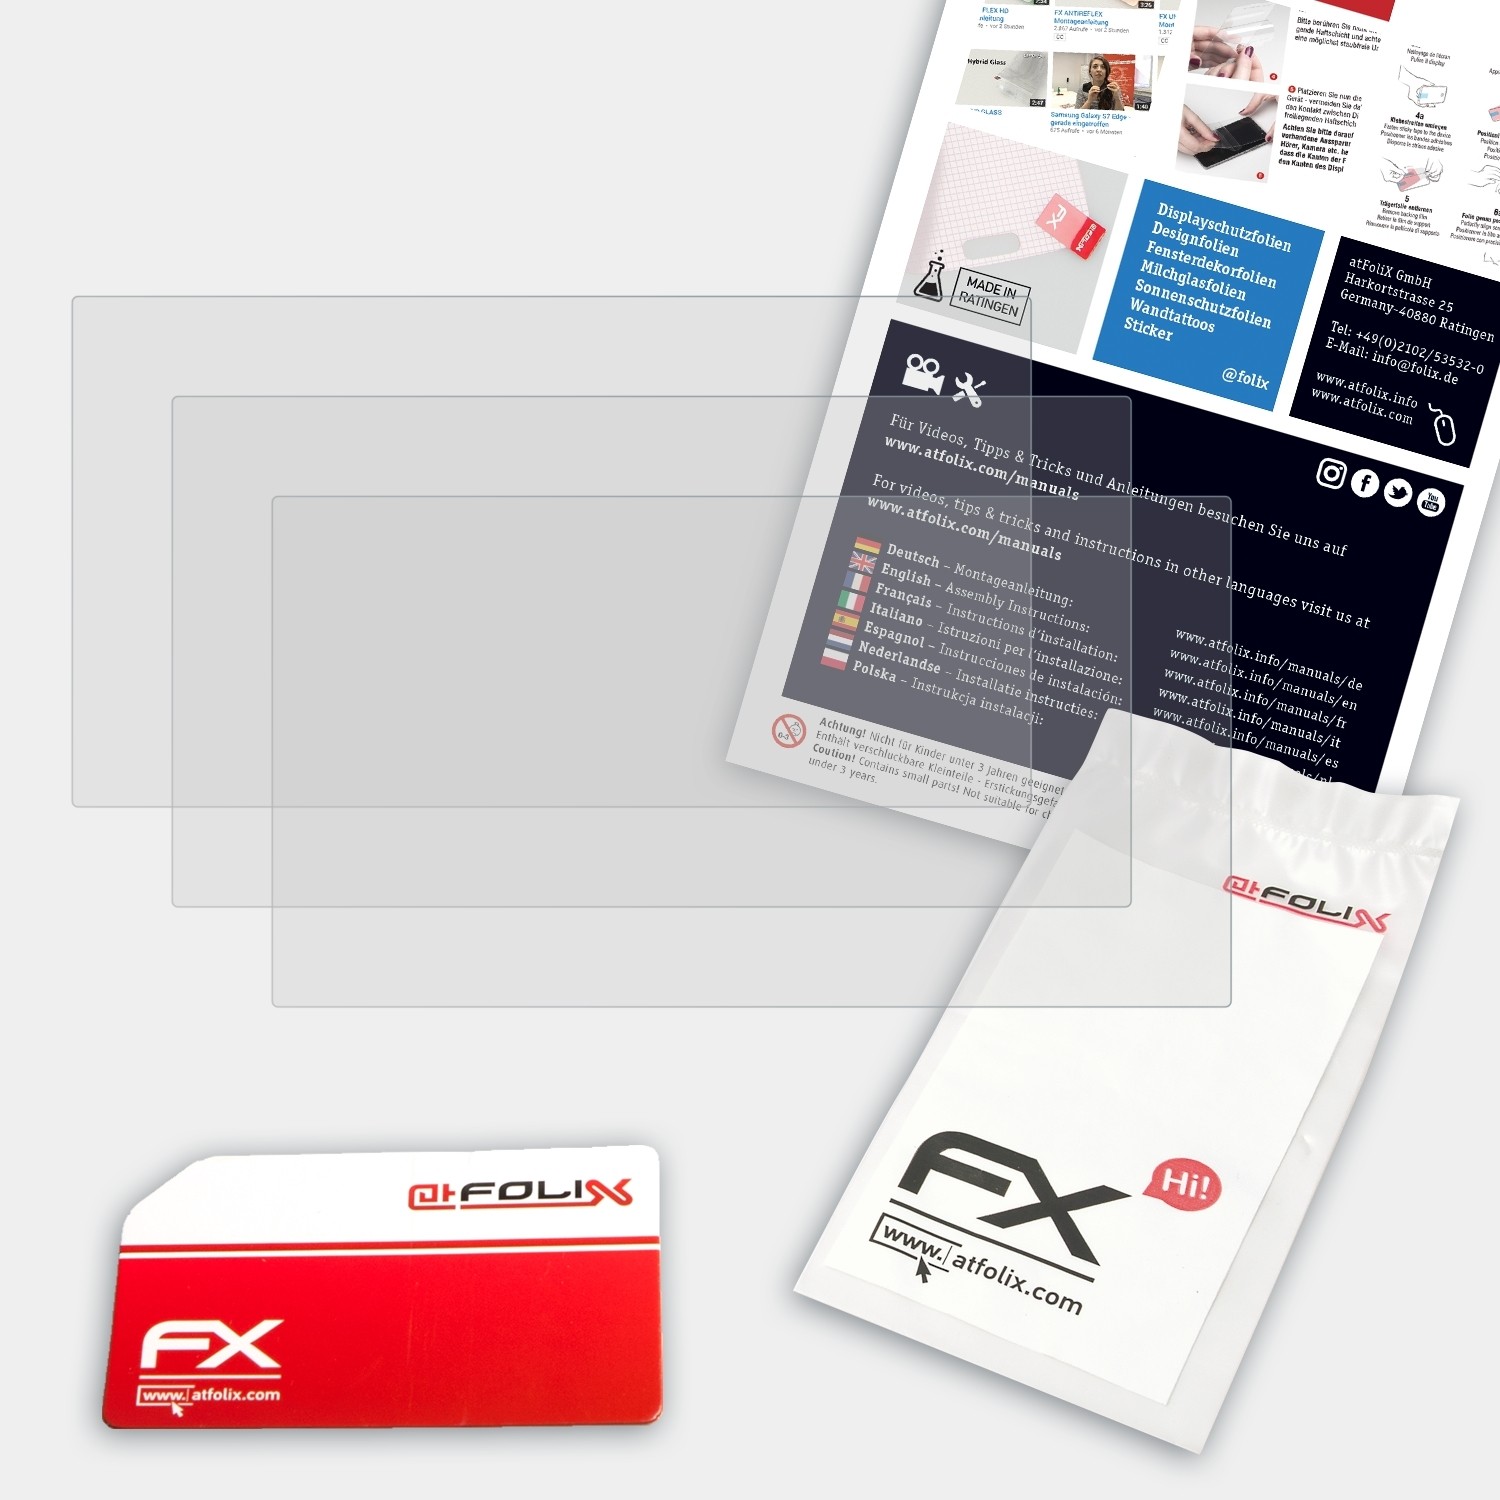 3x FX-Antireflex Auna DisGo Displayschutz(für Box ATFOLIX 360)